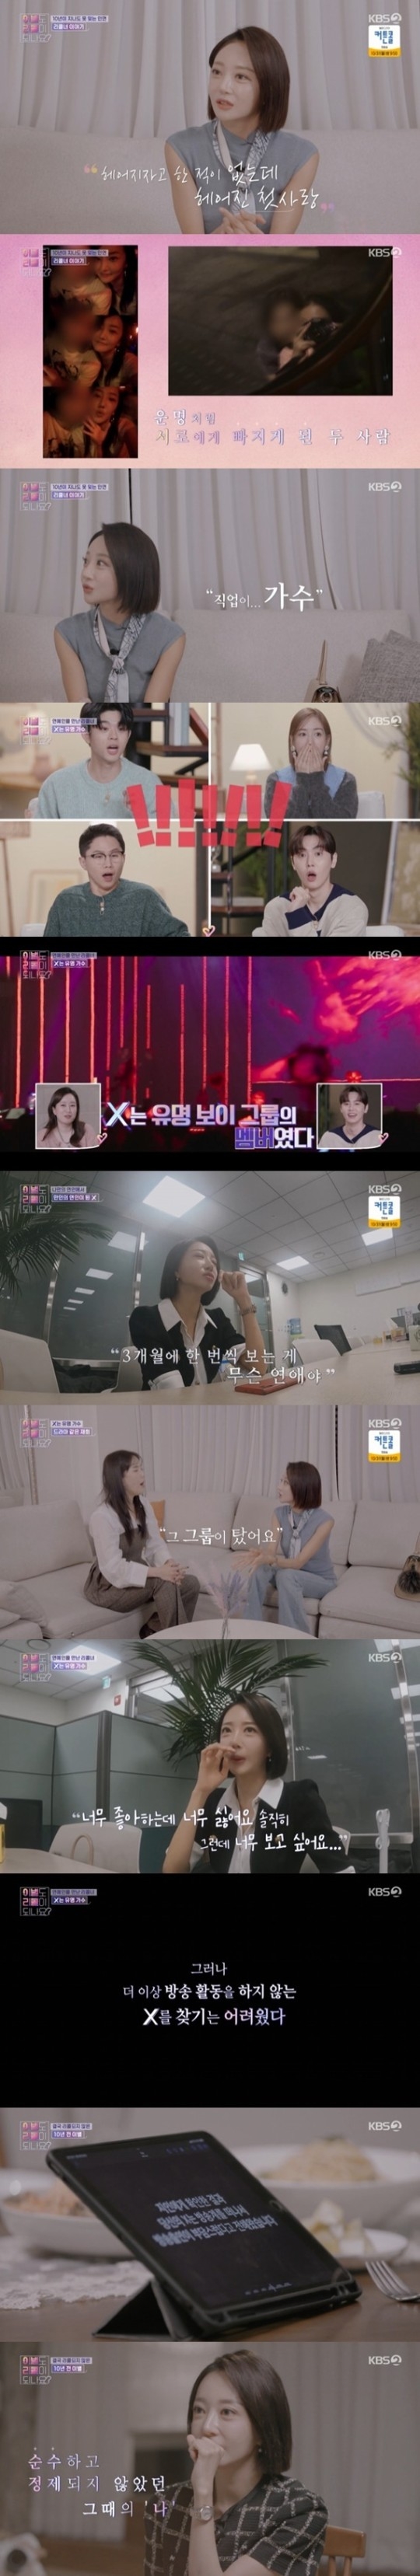 KBS 2TV 예능 프로그램 ‘이별도 리콜이 되나요?’ 캡처